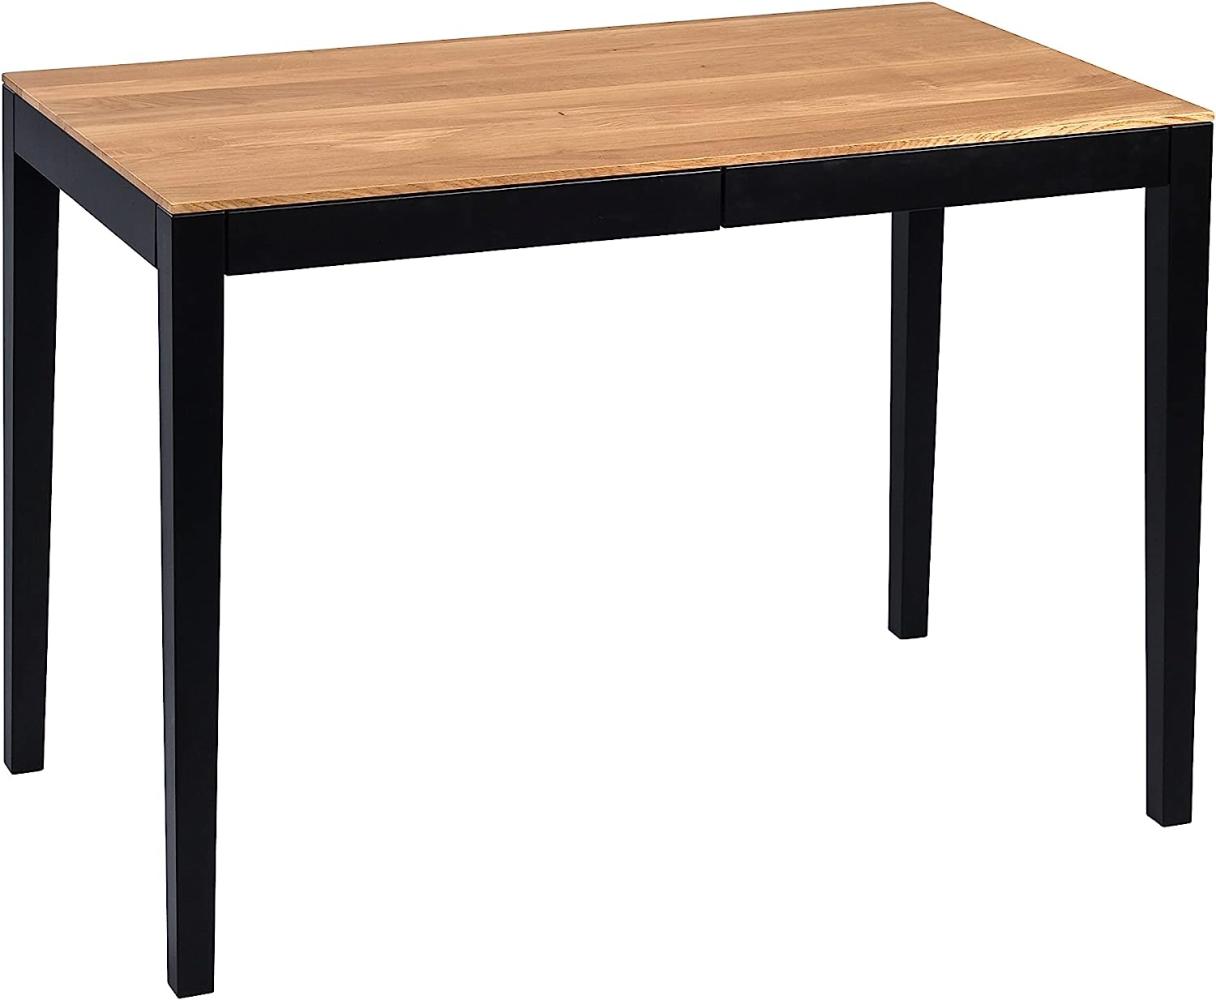 M2 Kollektion Nilsson Schreibtisch, Holz, braun, schwarz, B/H/T = 110x75x60cm Bild 1